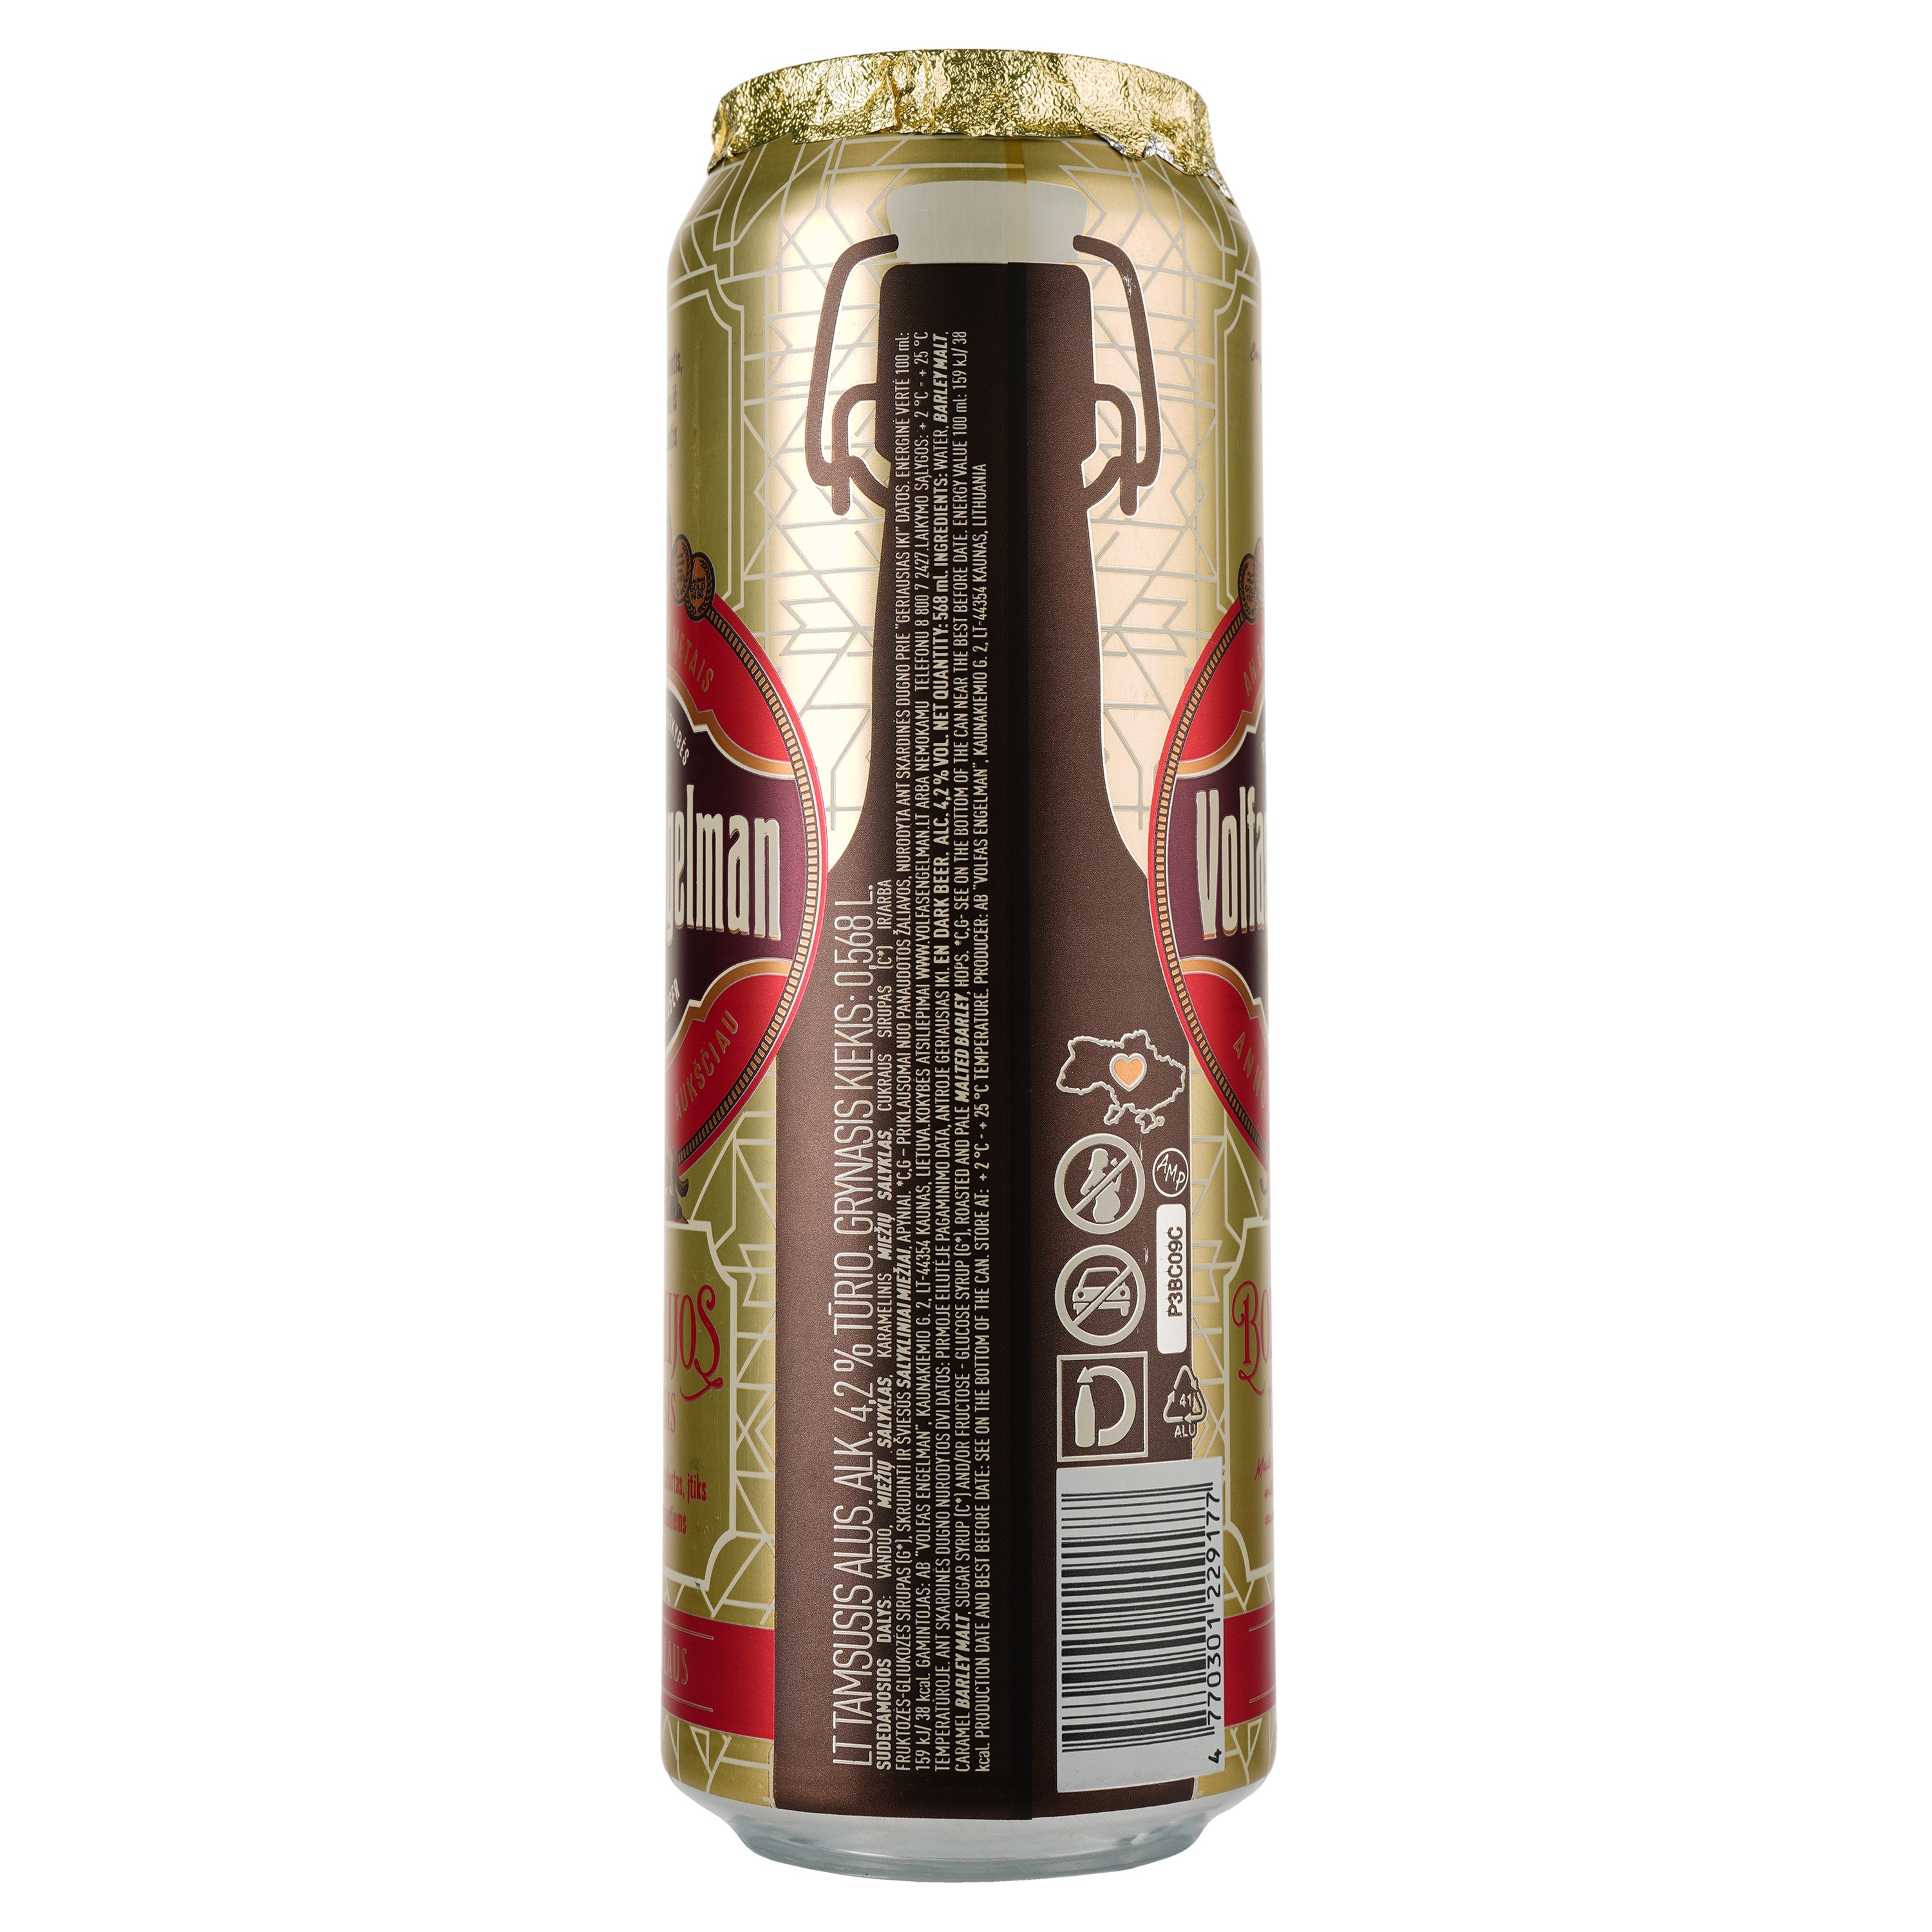 Пиво Volfas Engelman Bohemijos Dark темное, 4.2%, ж/б, 0.568 л - фото 2